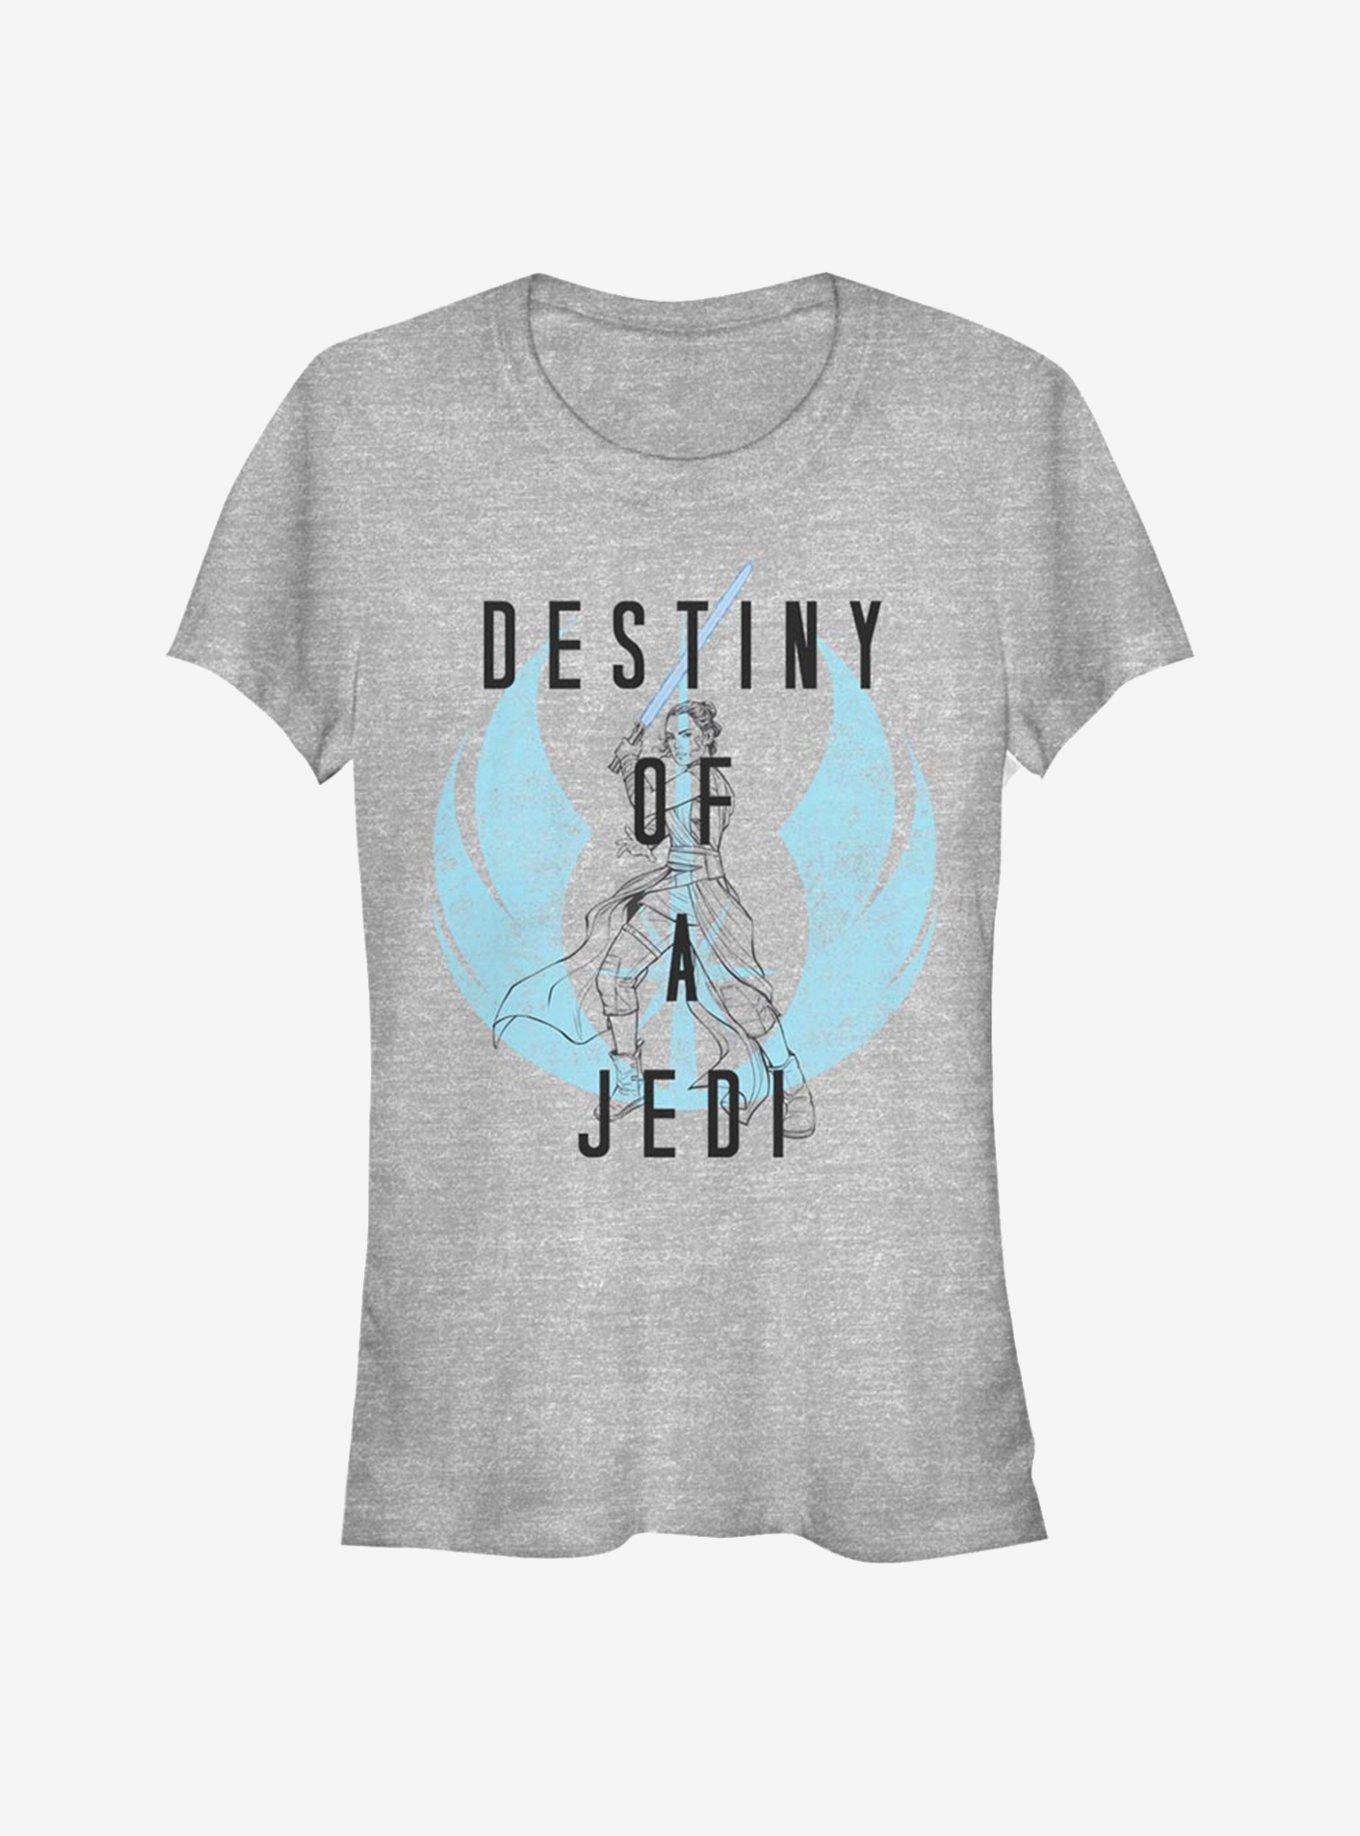 Star Wars: The Rise Of Skywalker Destiny A Jedi Girls T-Shirt